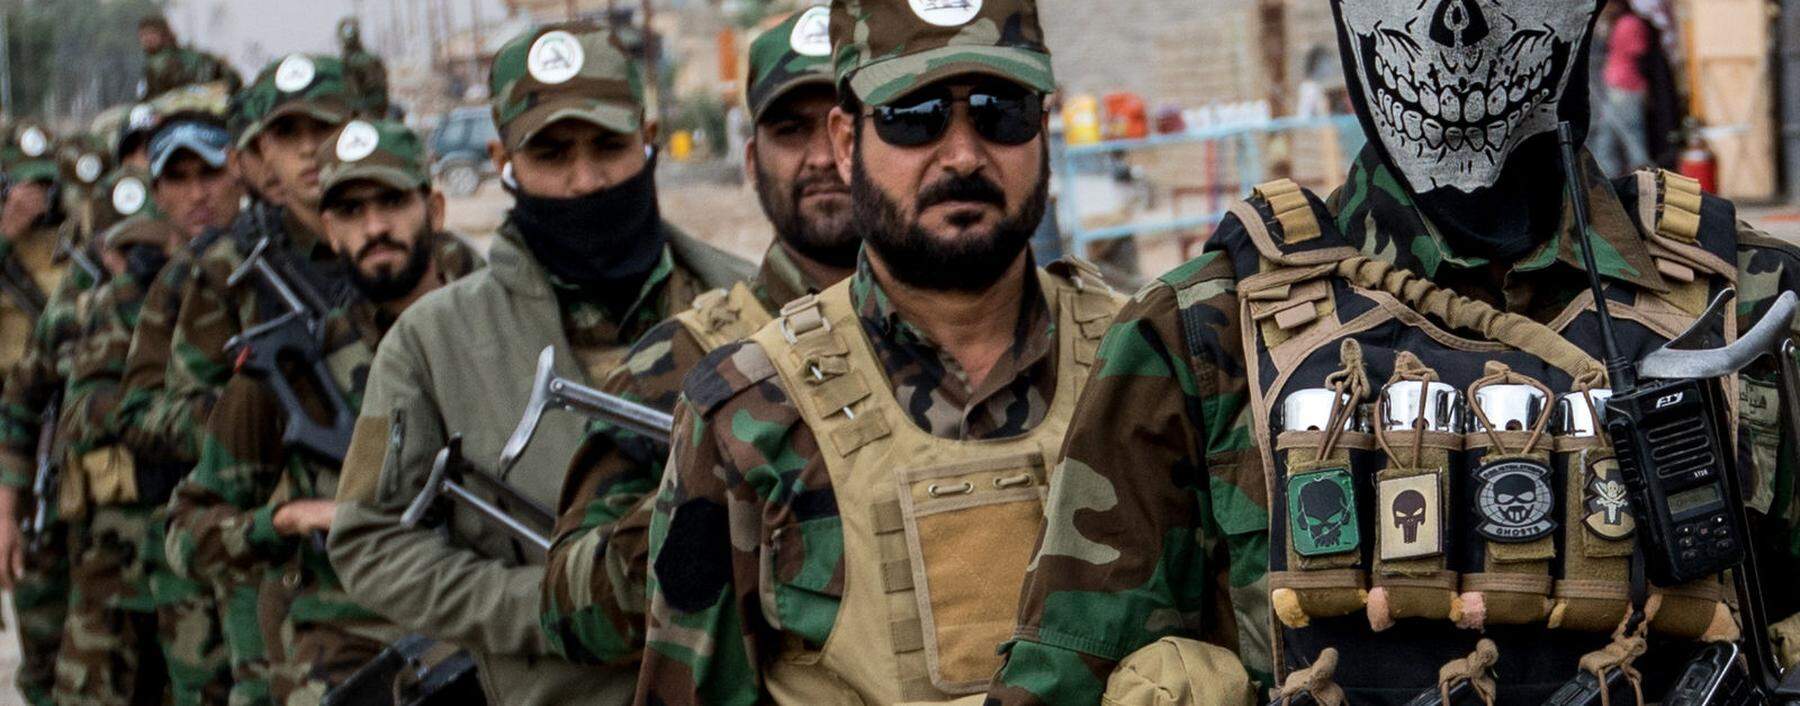 Die Kämpfer der irakischen Volksmobilmachungskräfte haben eine wichtige Rolle im Krieg gegen den IS gespielt. Sollte der Konflikt Washingtons mit Teheran eskalieren, könnten sie sich nun gegen die Amerikaner wenden.  